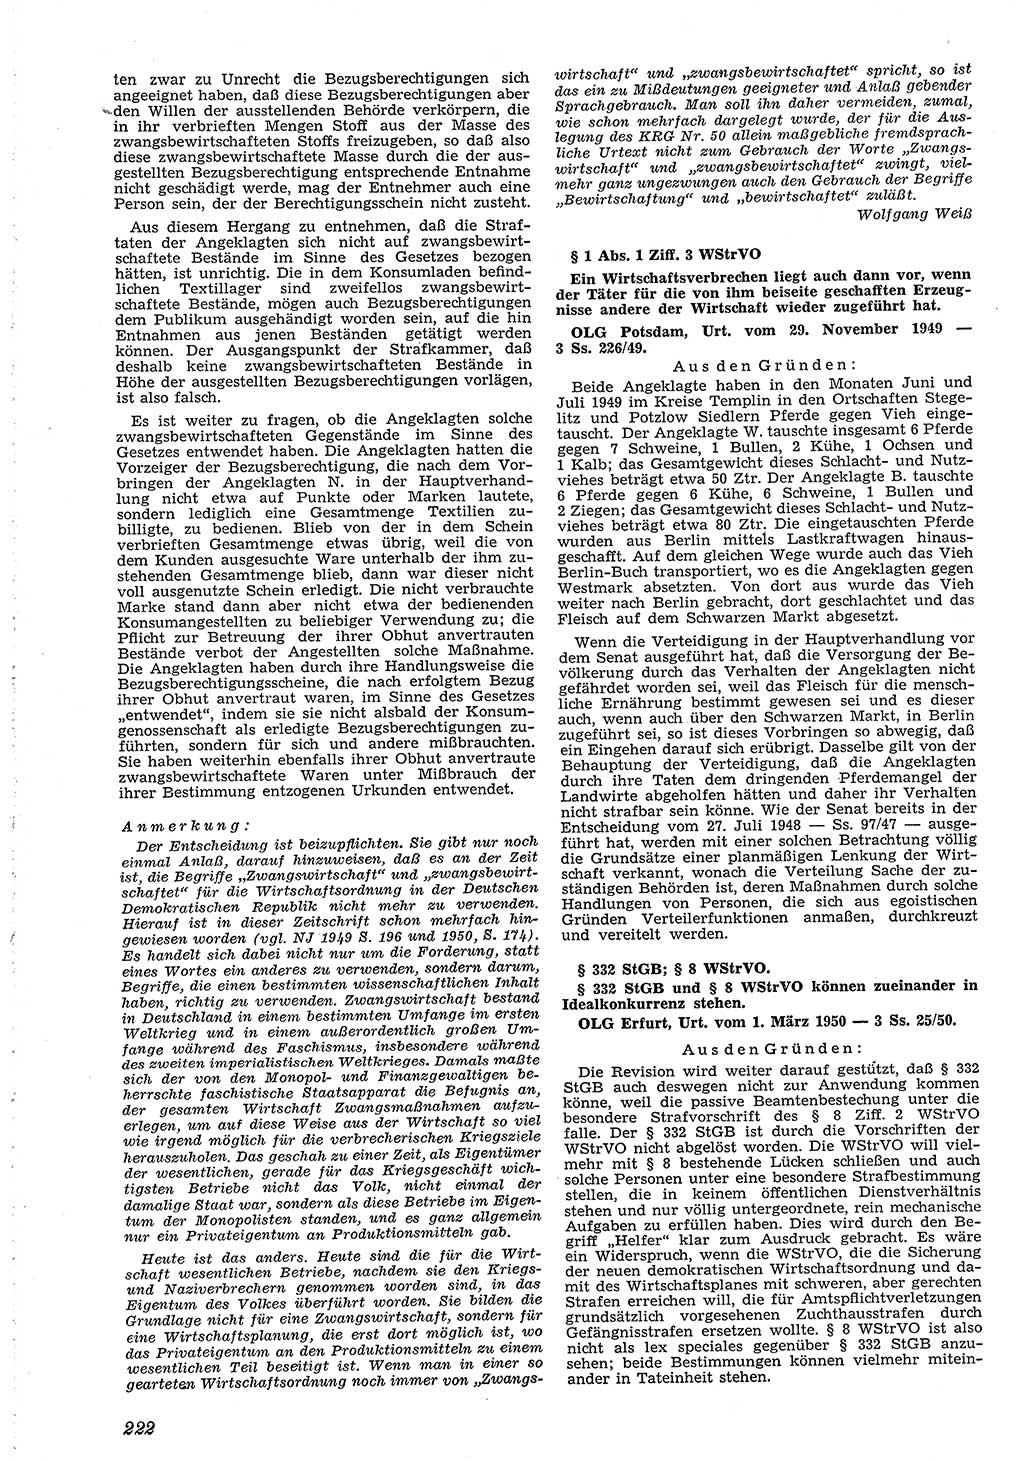 Neue Justiz (NJ), Zeitschrift für Recht und Rechtswissenschaft [Deutsche Demokratische Republik (DDR)], 4. Jahrgang 1950, Seite 222 (NJ DDR 1950, S. 222)